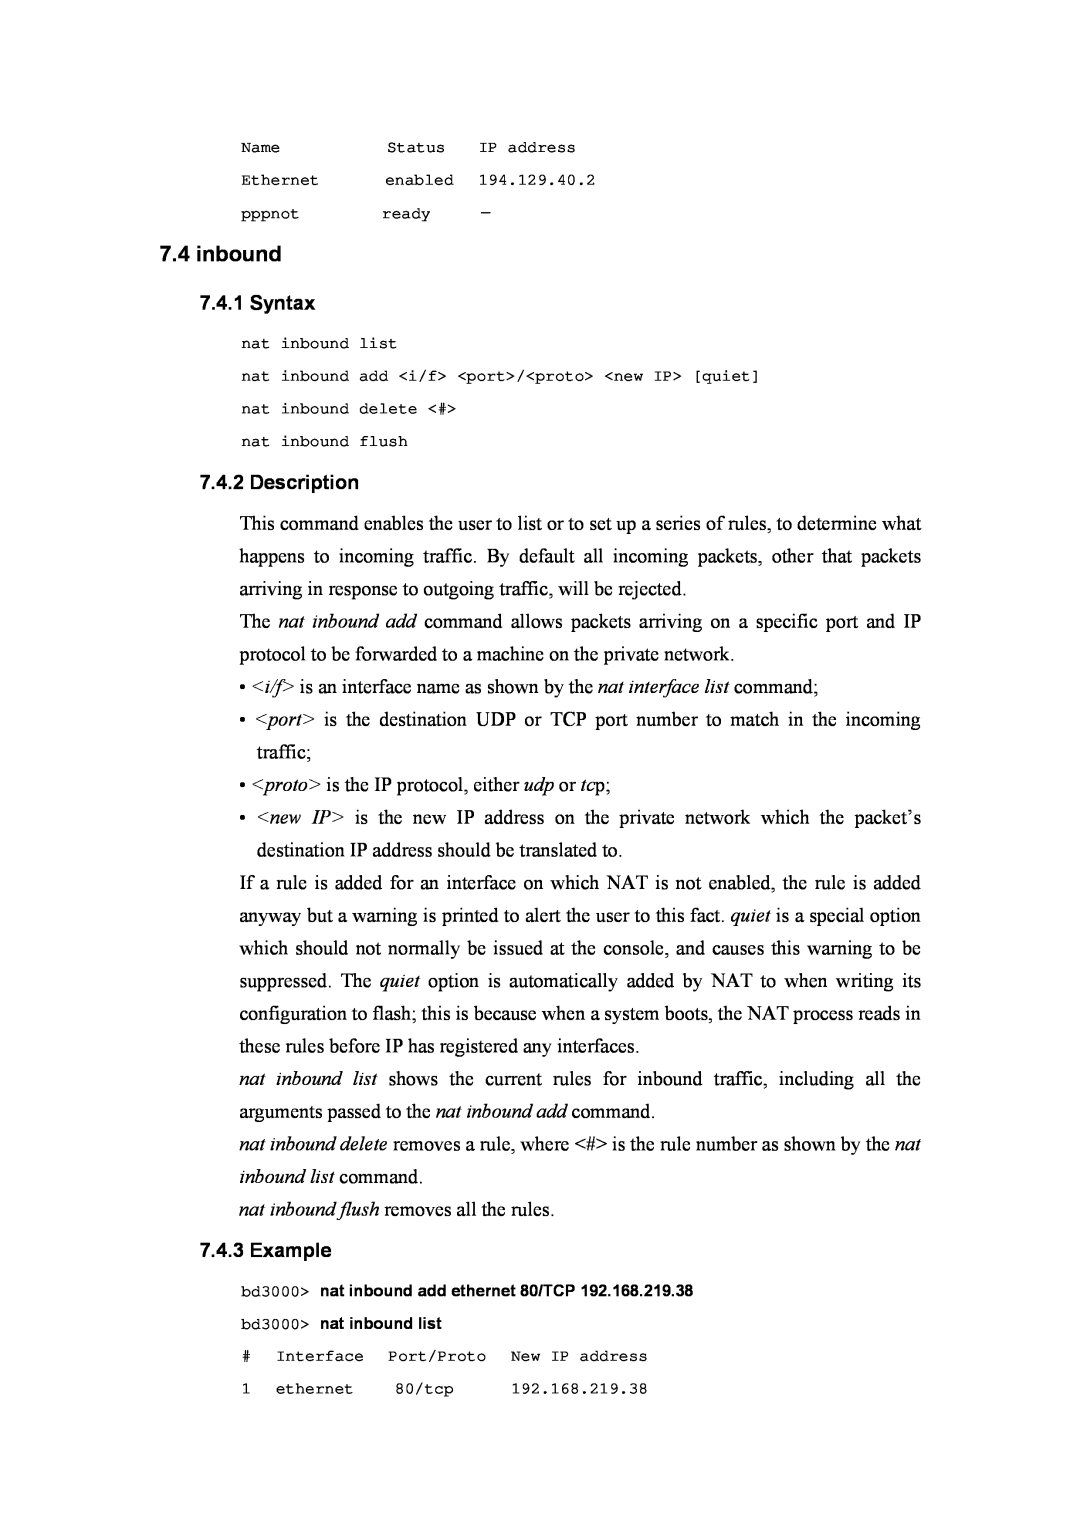 Atlantis Land A02-RA(Atmos)_ME01 manual inbound, Syntax, Description, Example 